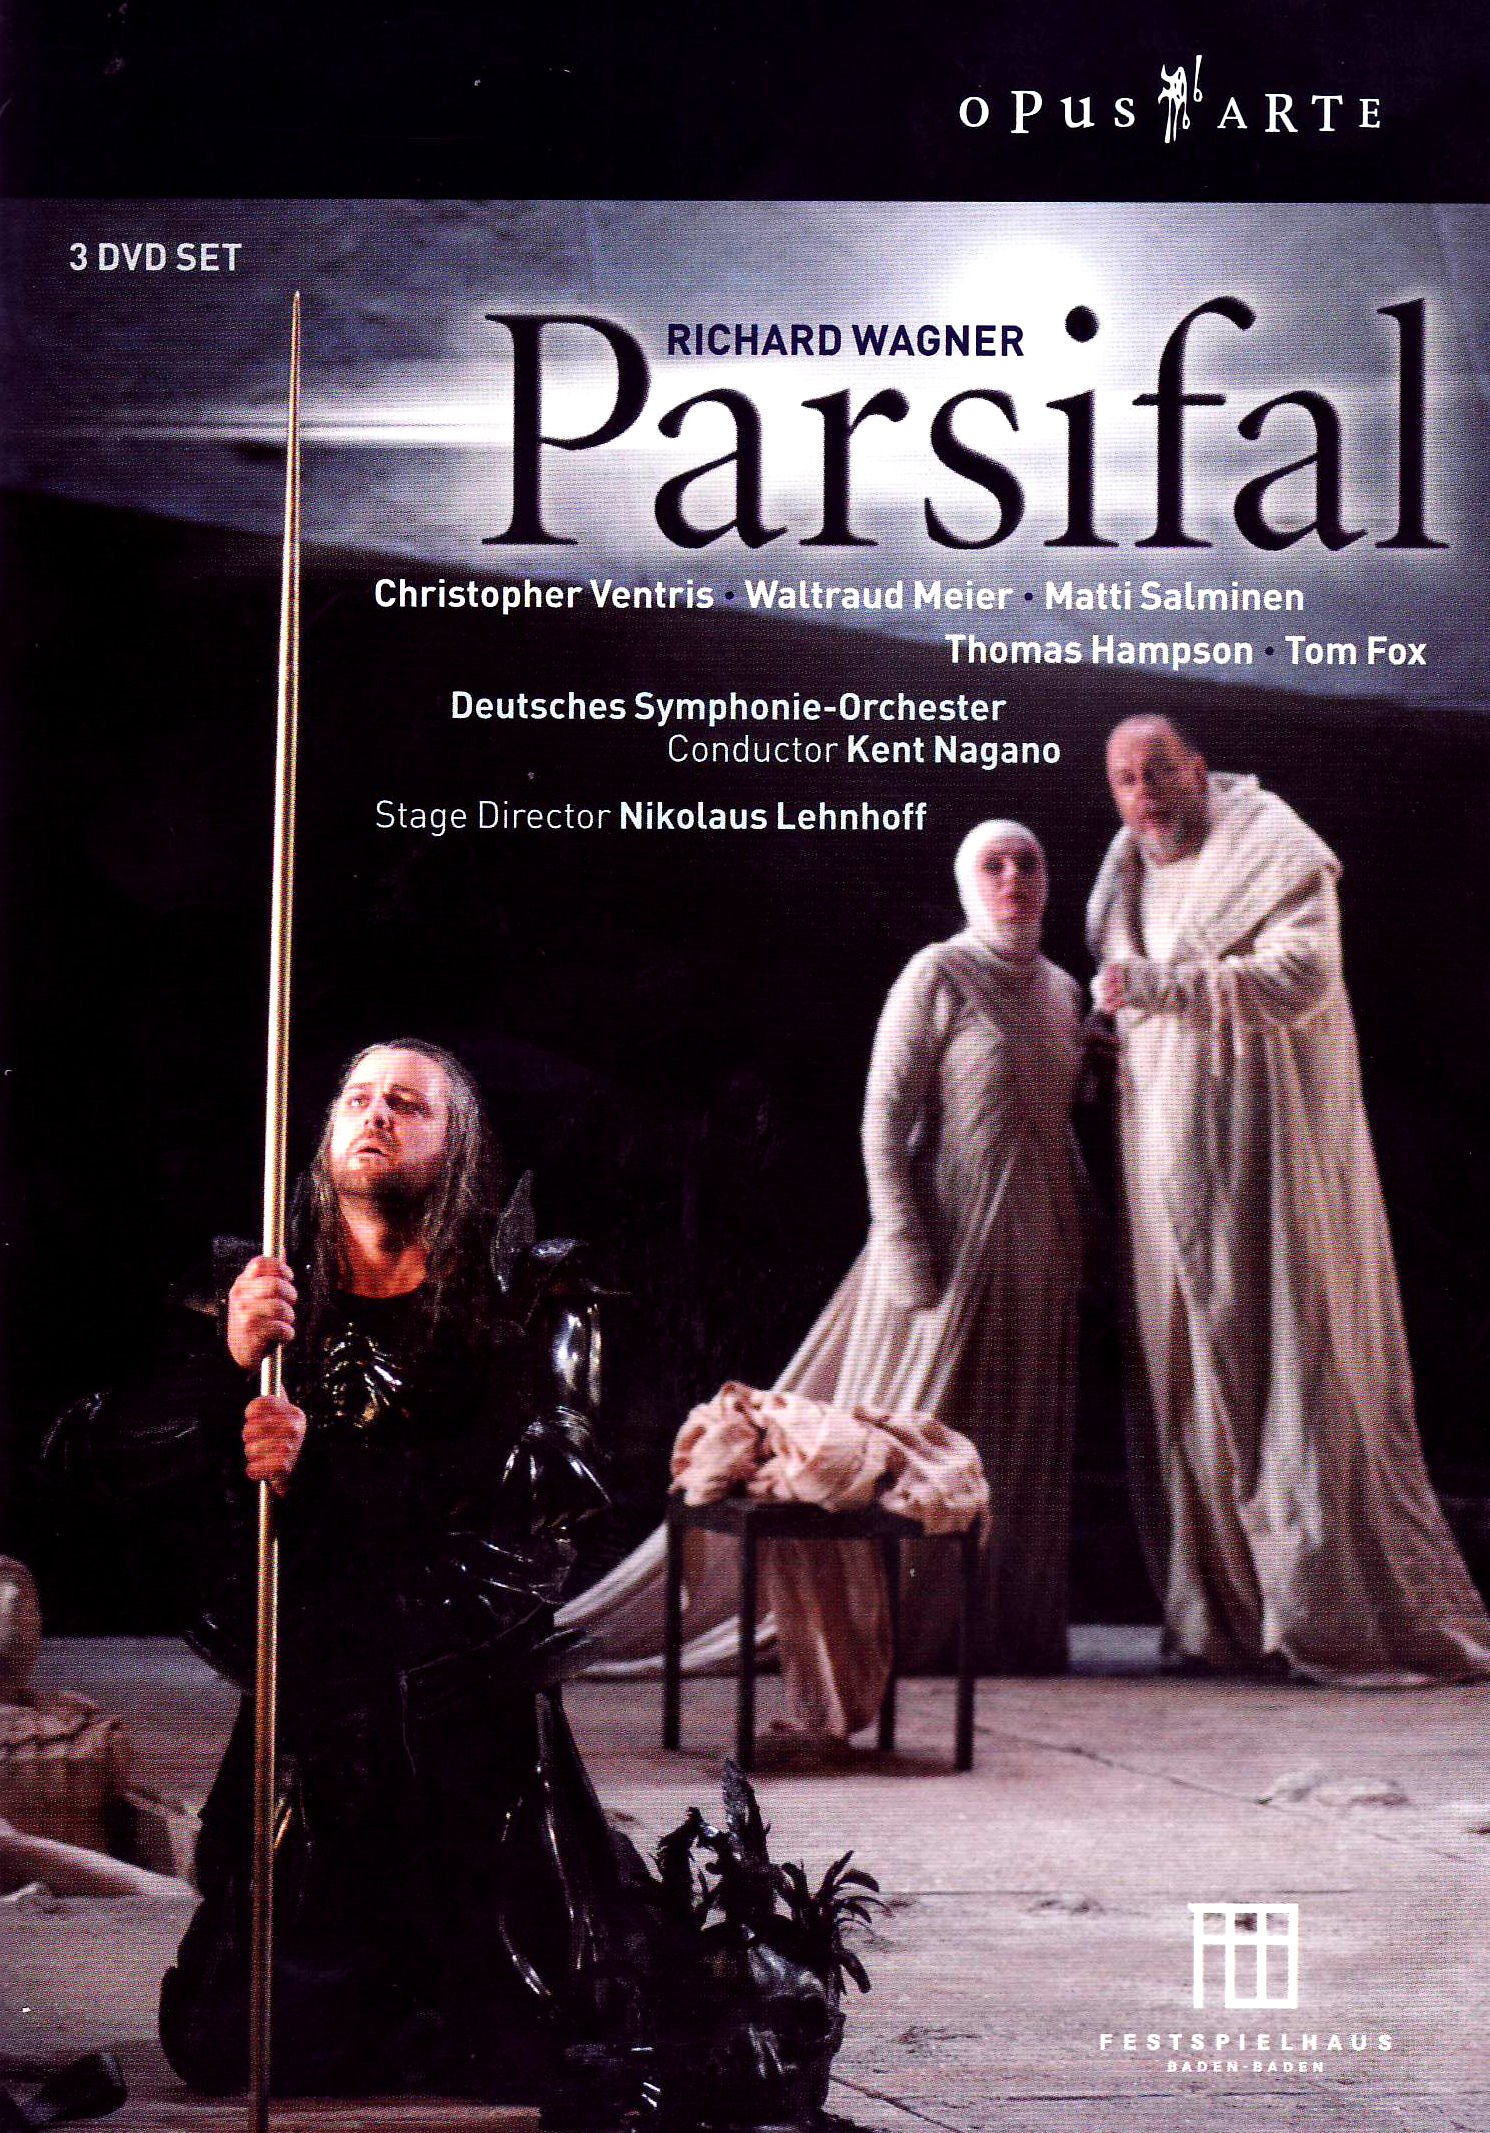 Music Dvd Richard Wagner - Parsifal (3 Dvd) NUOVO SIGILLATO, EDIZIONE DEL 01/01/2010 SUBITO DISPONIBILE